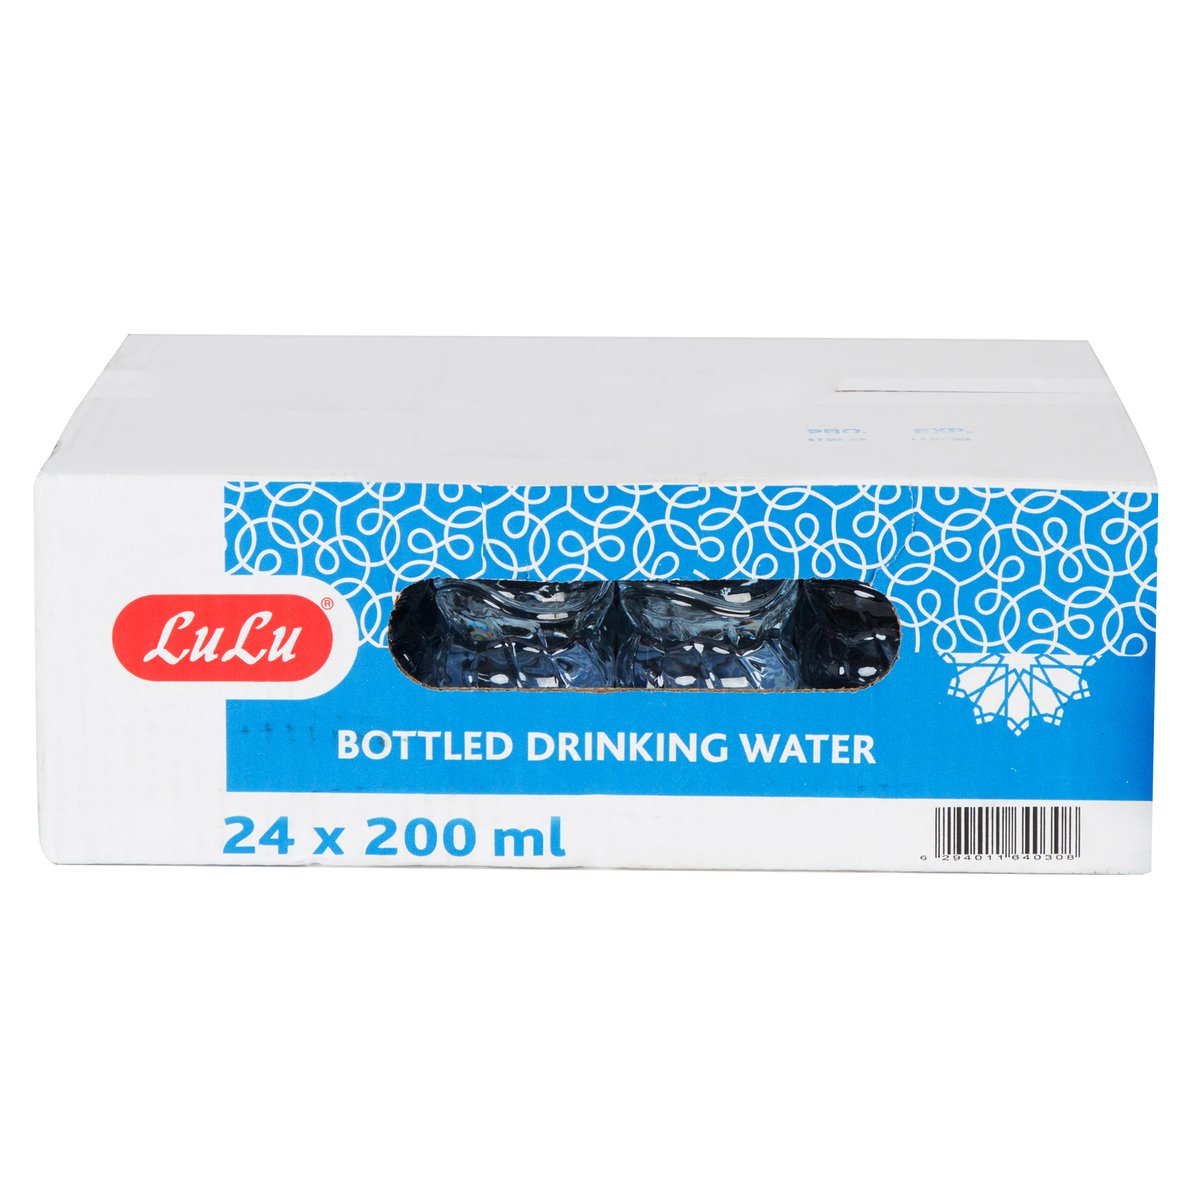 Lulu Bottled Drinking Water 24 x 200ml